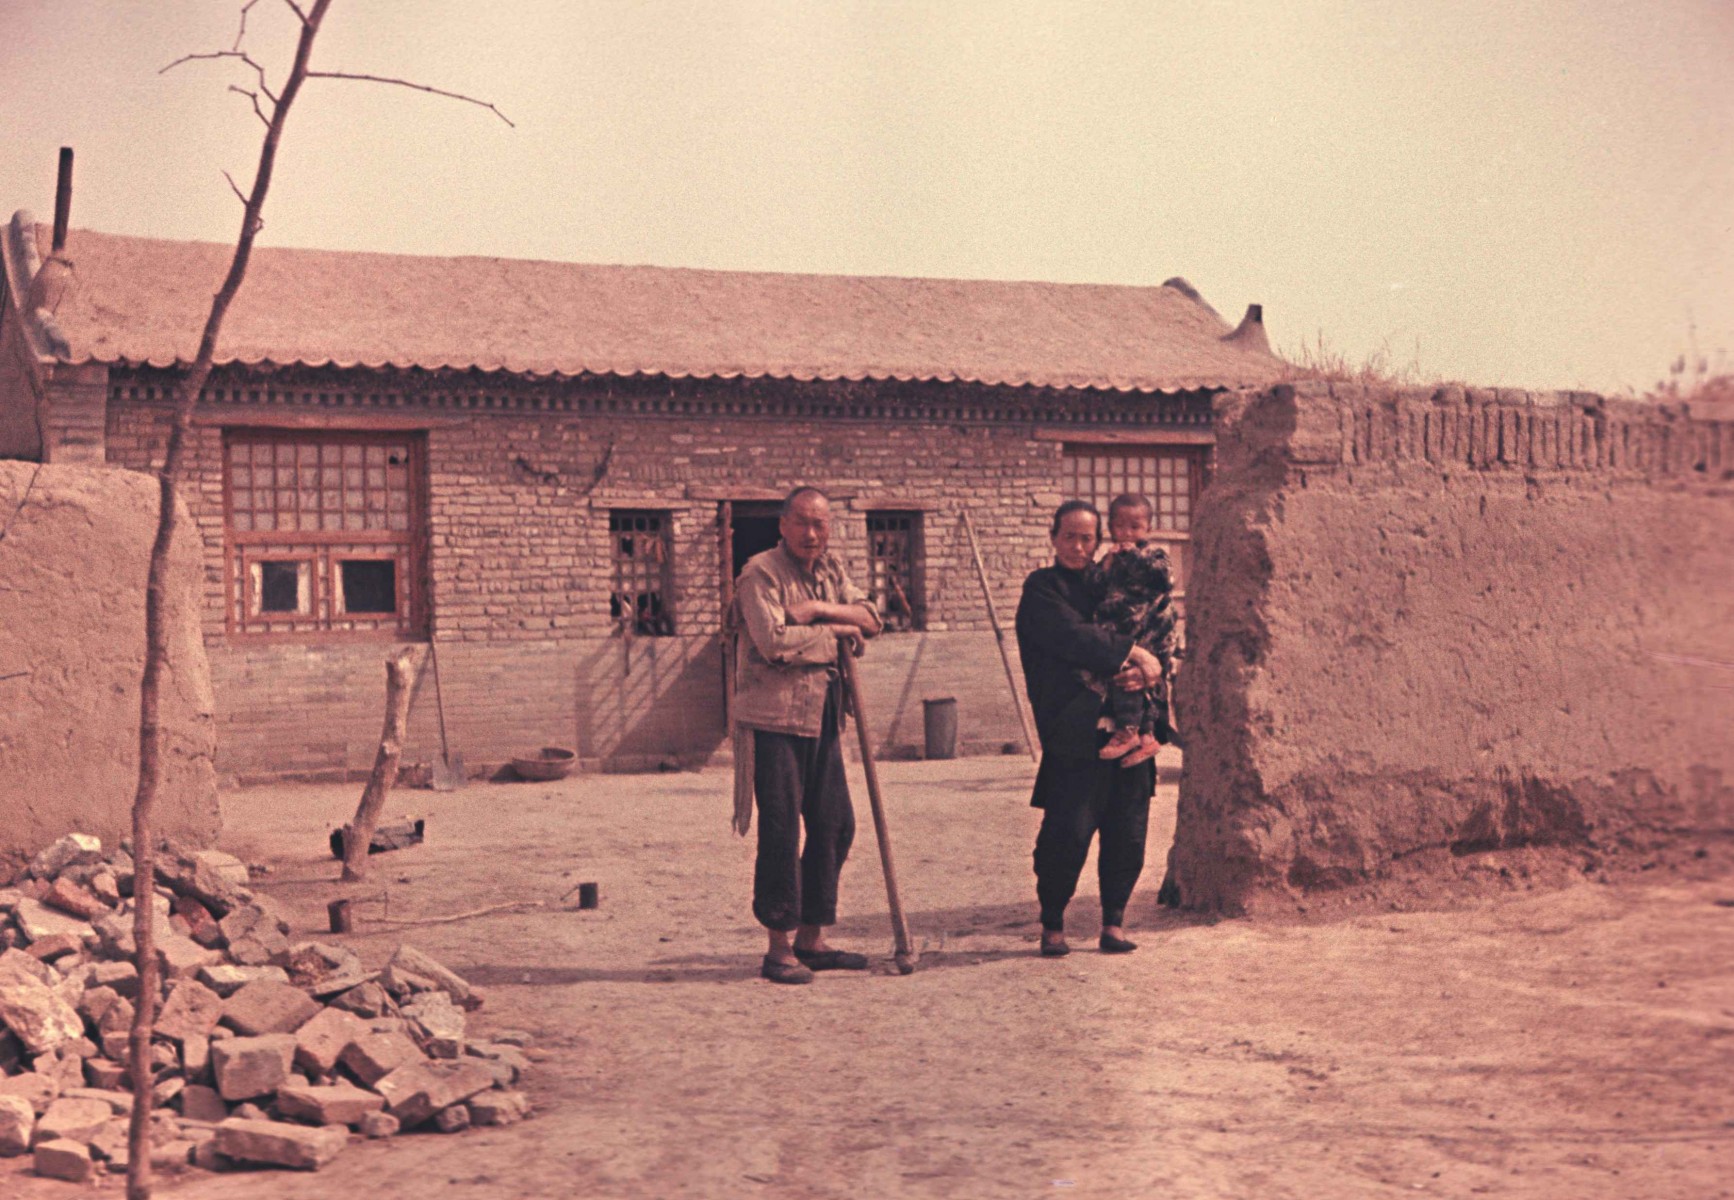 Сельские жители.  Провинция Китая. Осень 1949 года. Автор фото В. Нестеров.